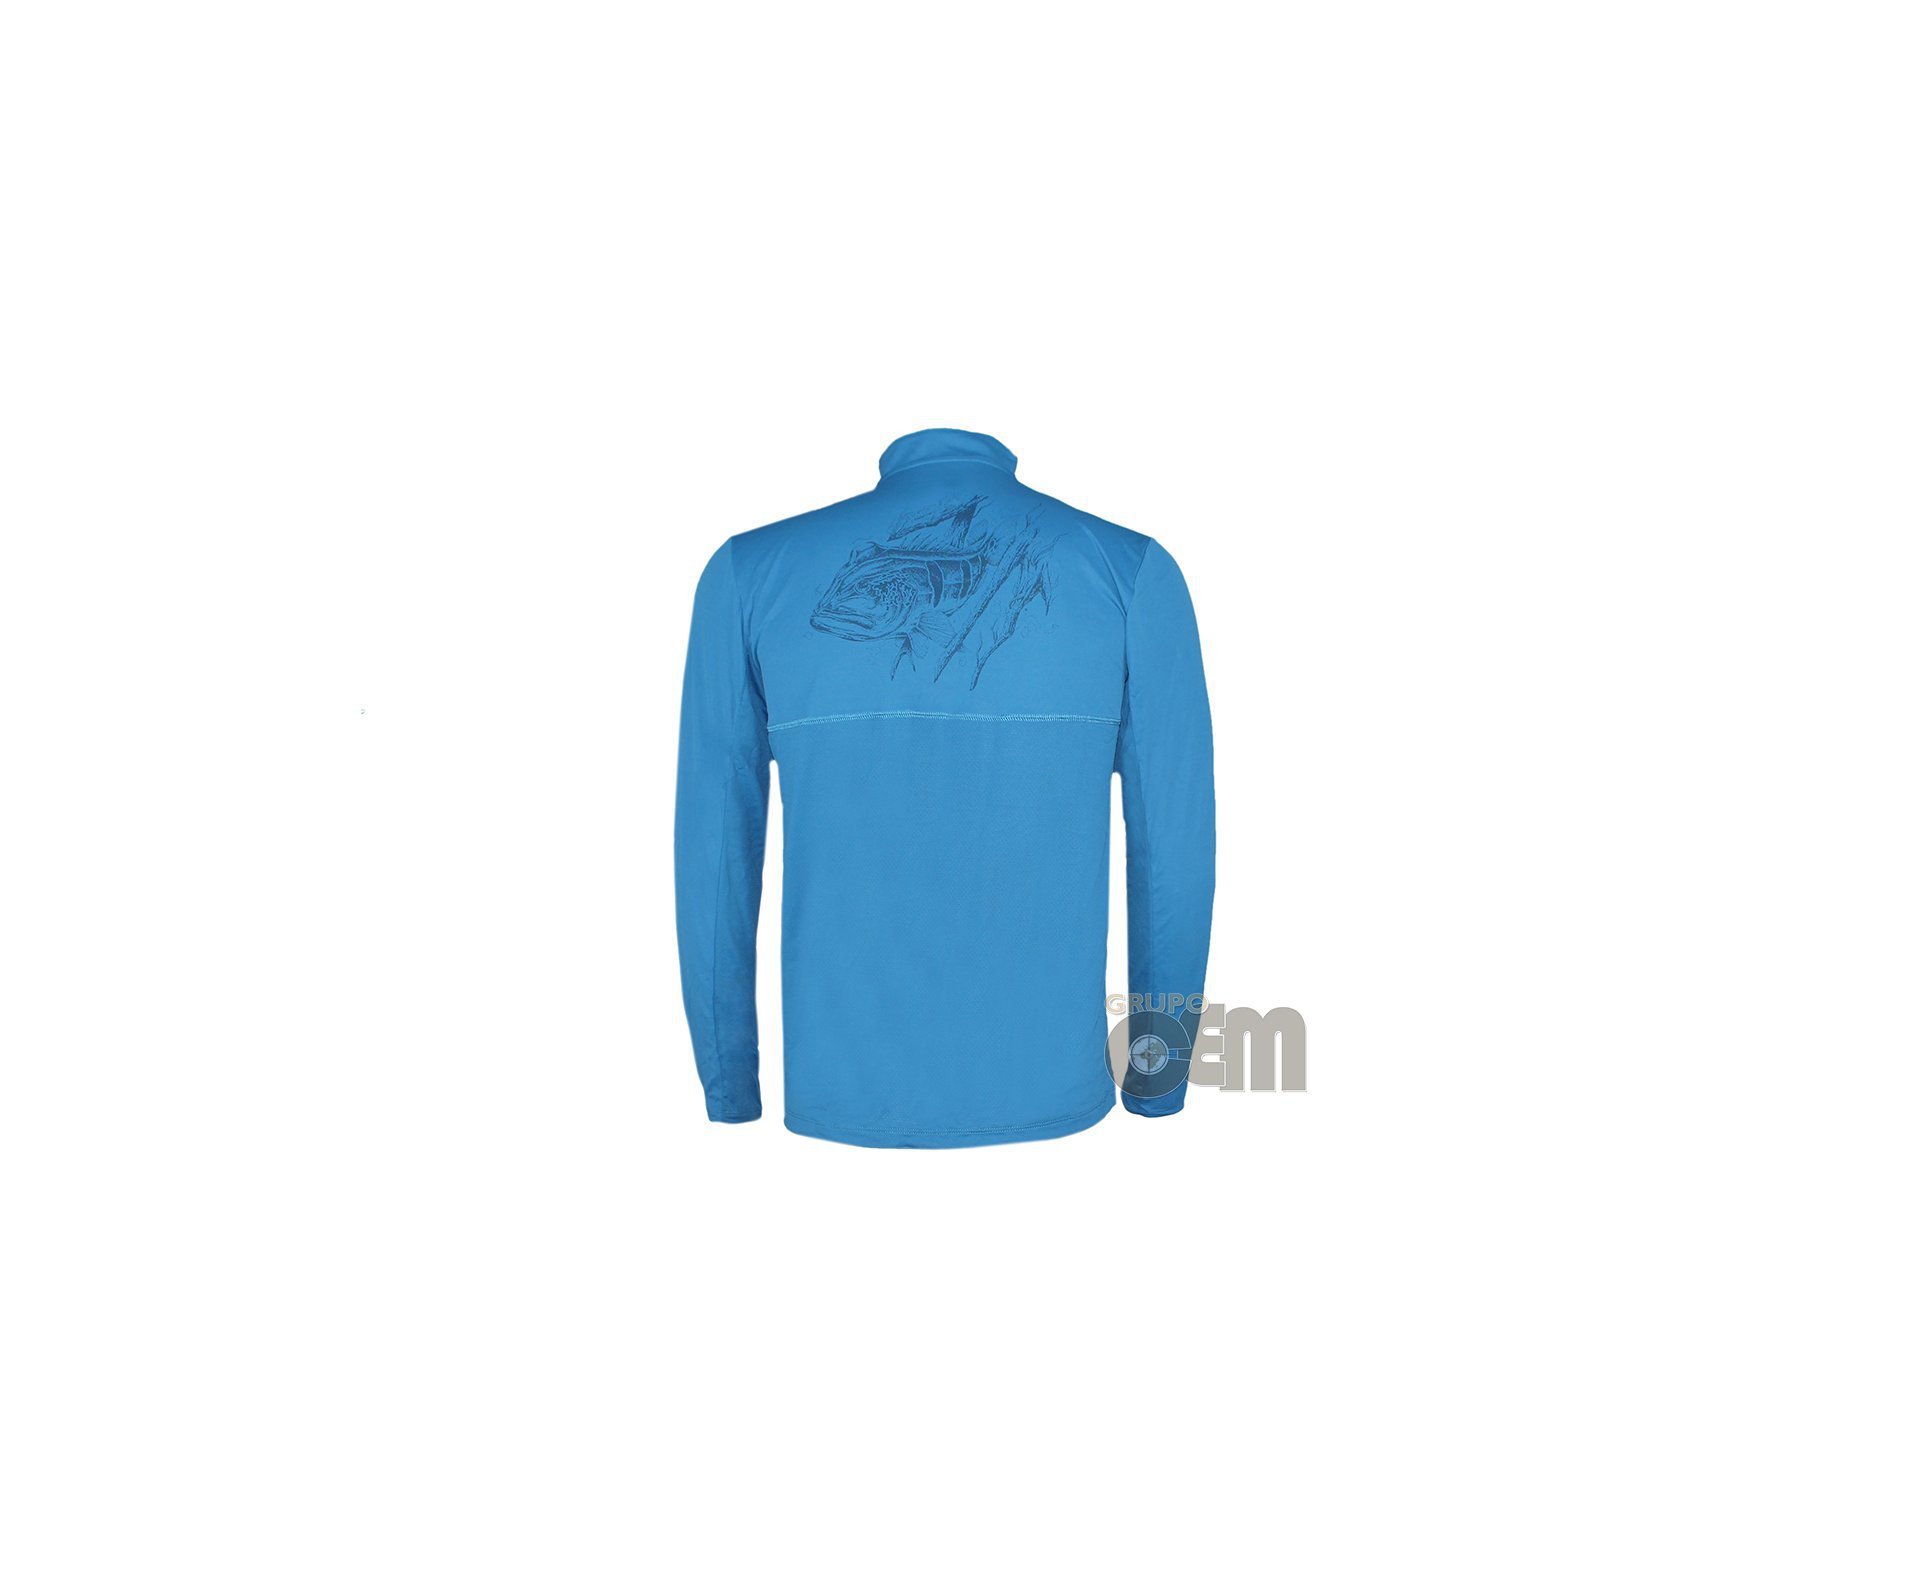 Camiseta Fisherman Azul - Proteção Uva/uvb 50+ Fps - Cardume - P